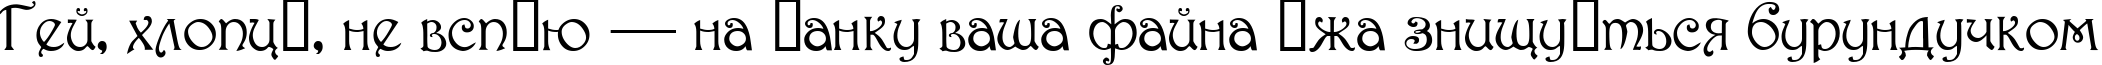 Пример написания шрифтом Parisian  Normal текста на украинском